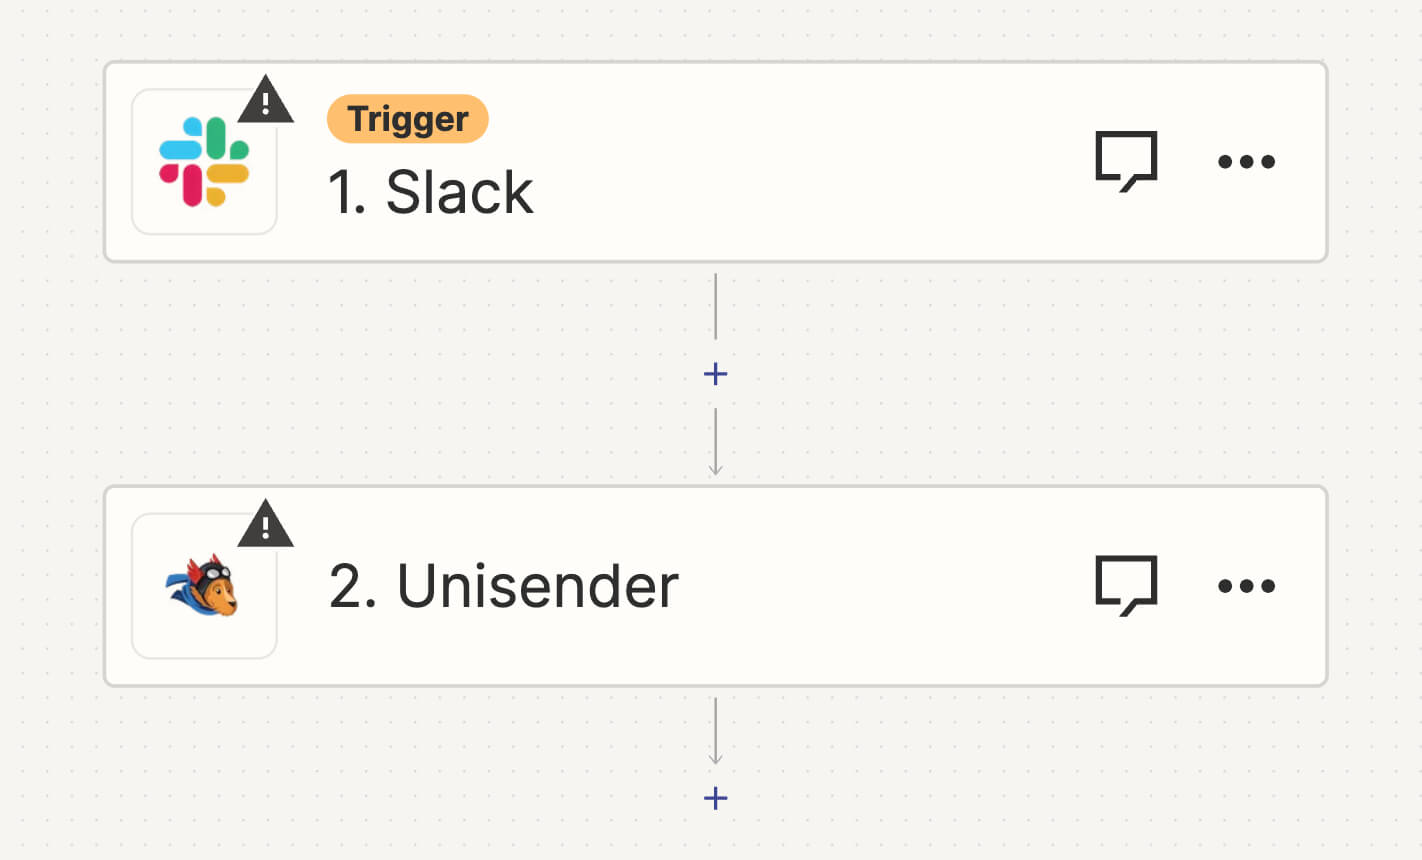 Создание связки между Slack и Unisender.